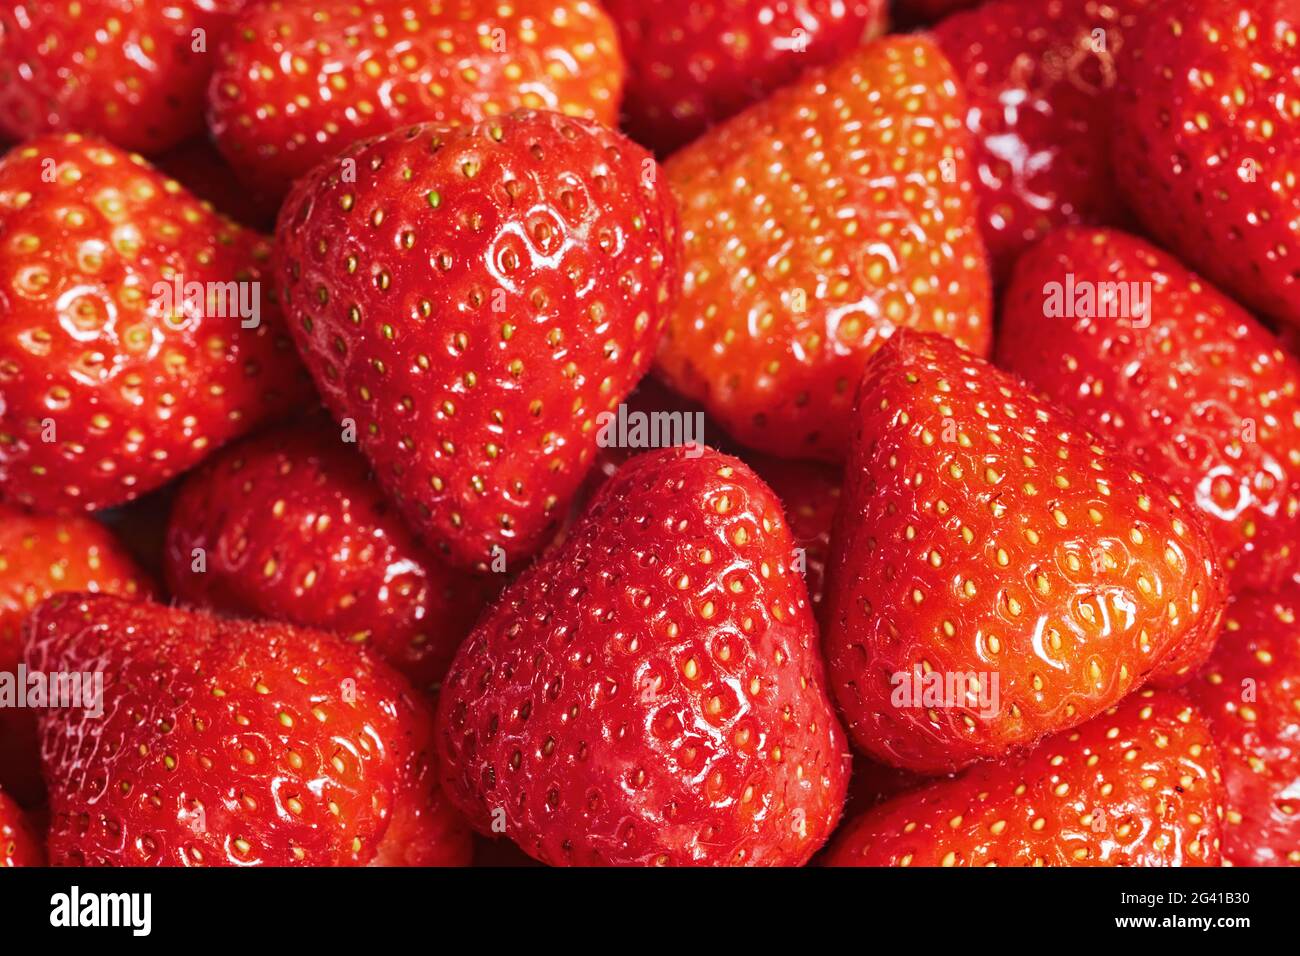 Fond de fraises mûres fraîches de gros plan Banque D'Images